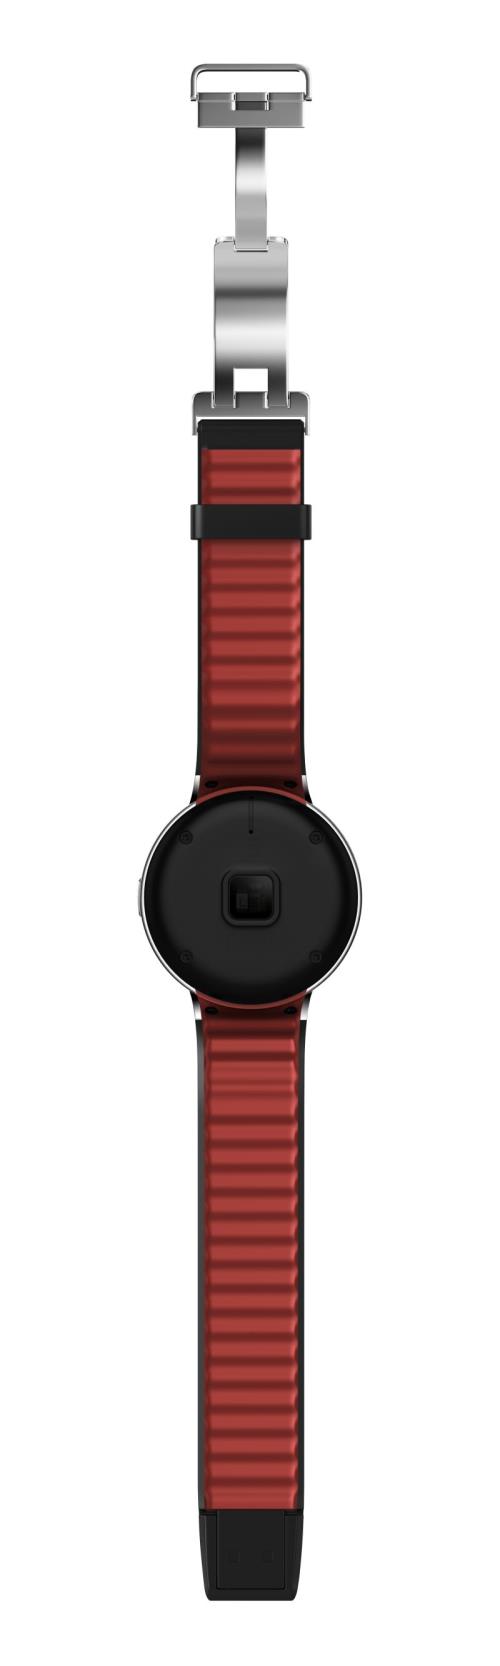 Montre Alcatel One Touch Watch SM02 - Montre connectée - Achat